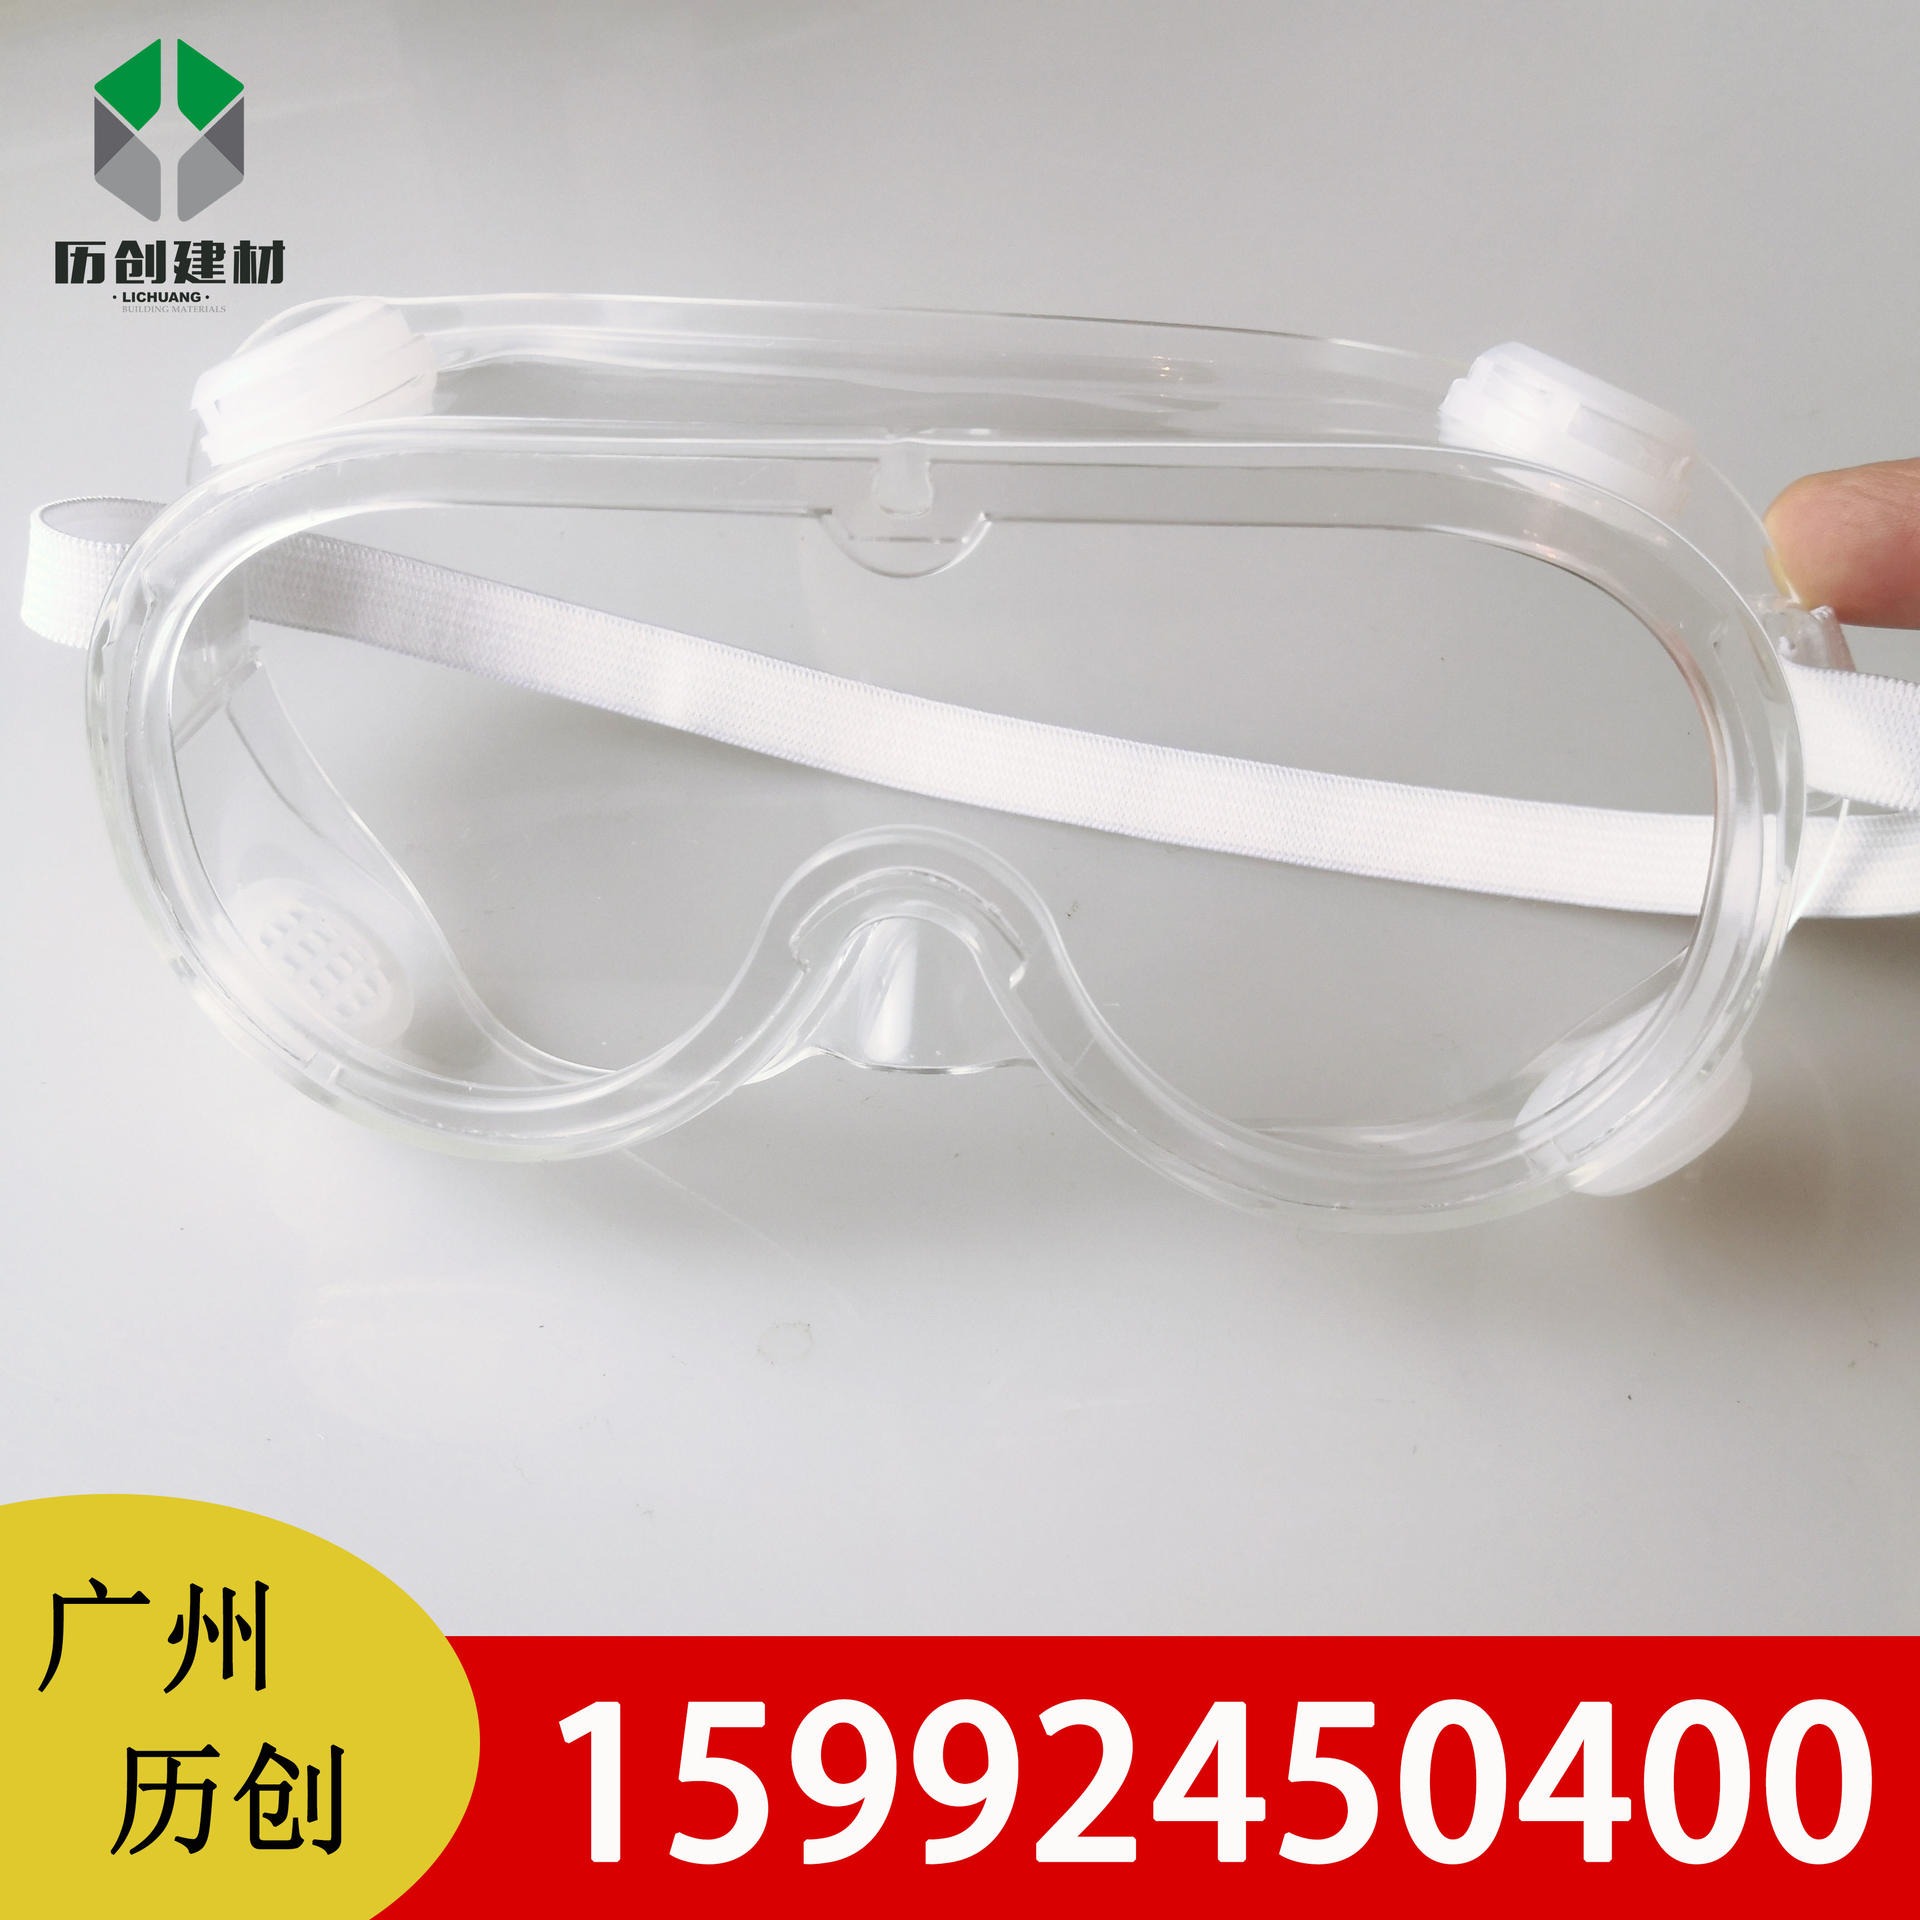 透明PC防雾板 防风眼镜加工 防尘防风沙 隔离眼罩 透明视窗 质保十年 可定制